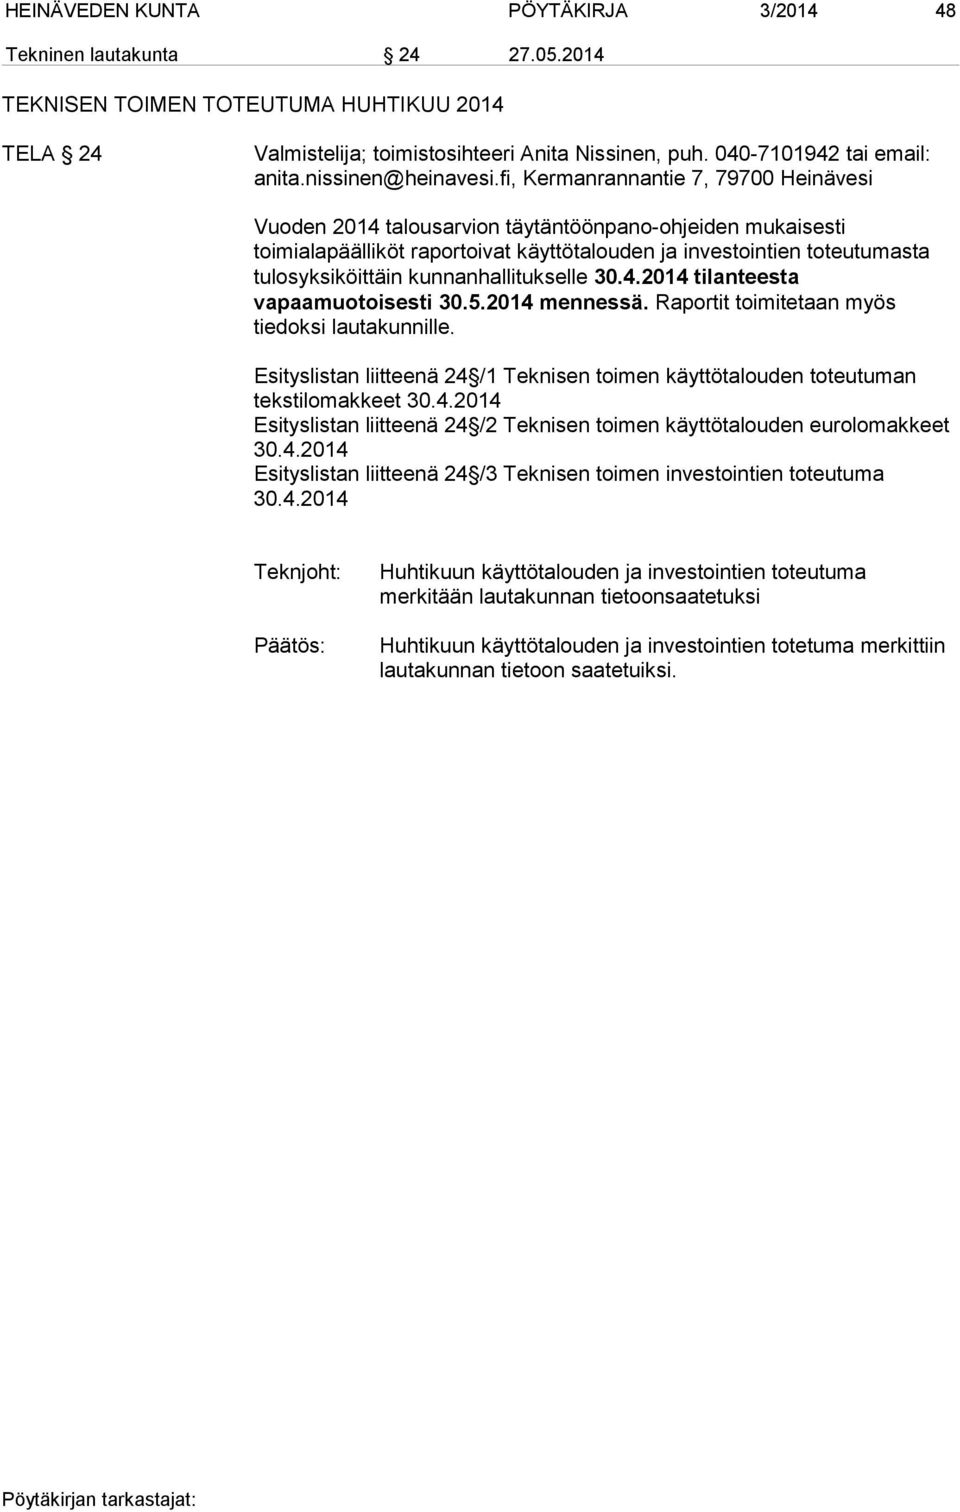 fi, Kermanrannantie 7, 79700 Heinävesi Vuoden 2014 talousarvion täytäntöönpano-ohjeiden mukaisesti toimialapäälliköt raportoivat käyttötalouden ja investointien toteutumasta tulosyksiköittäin